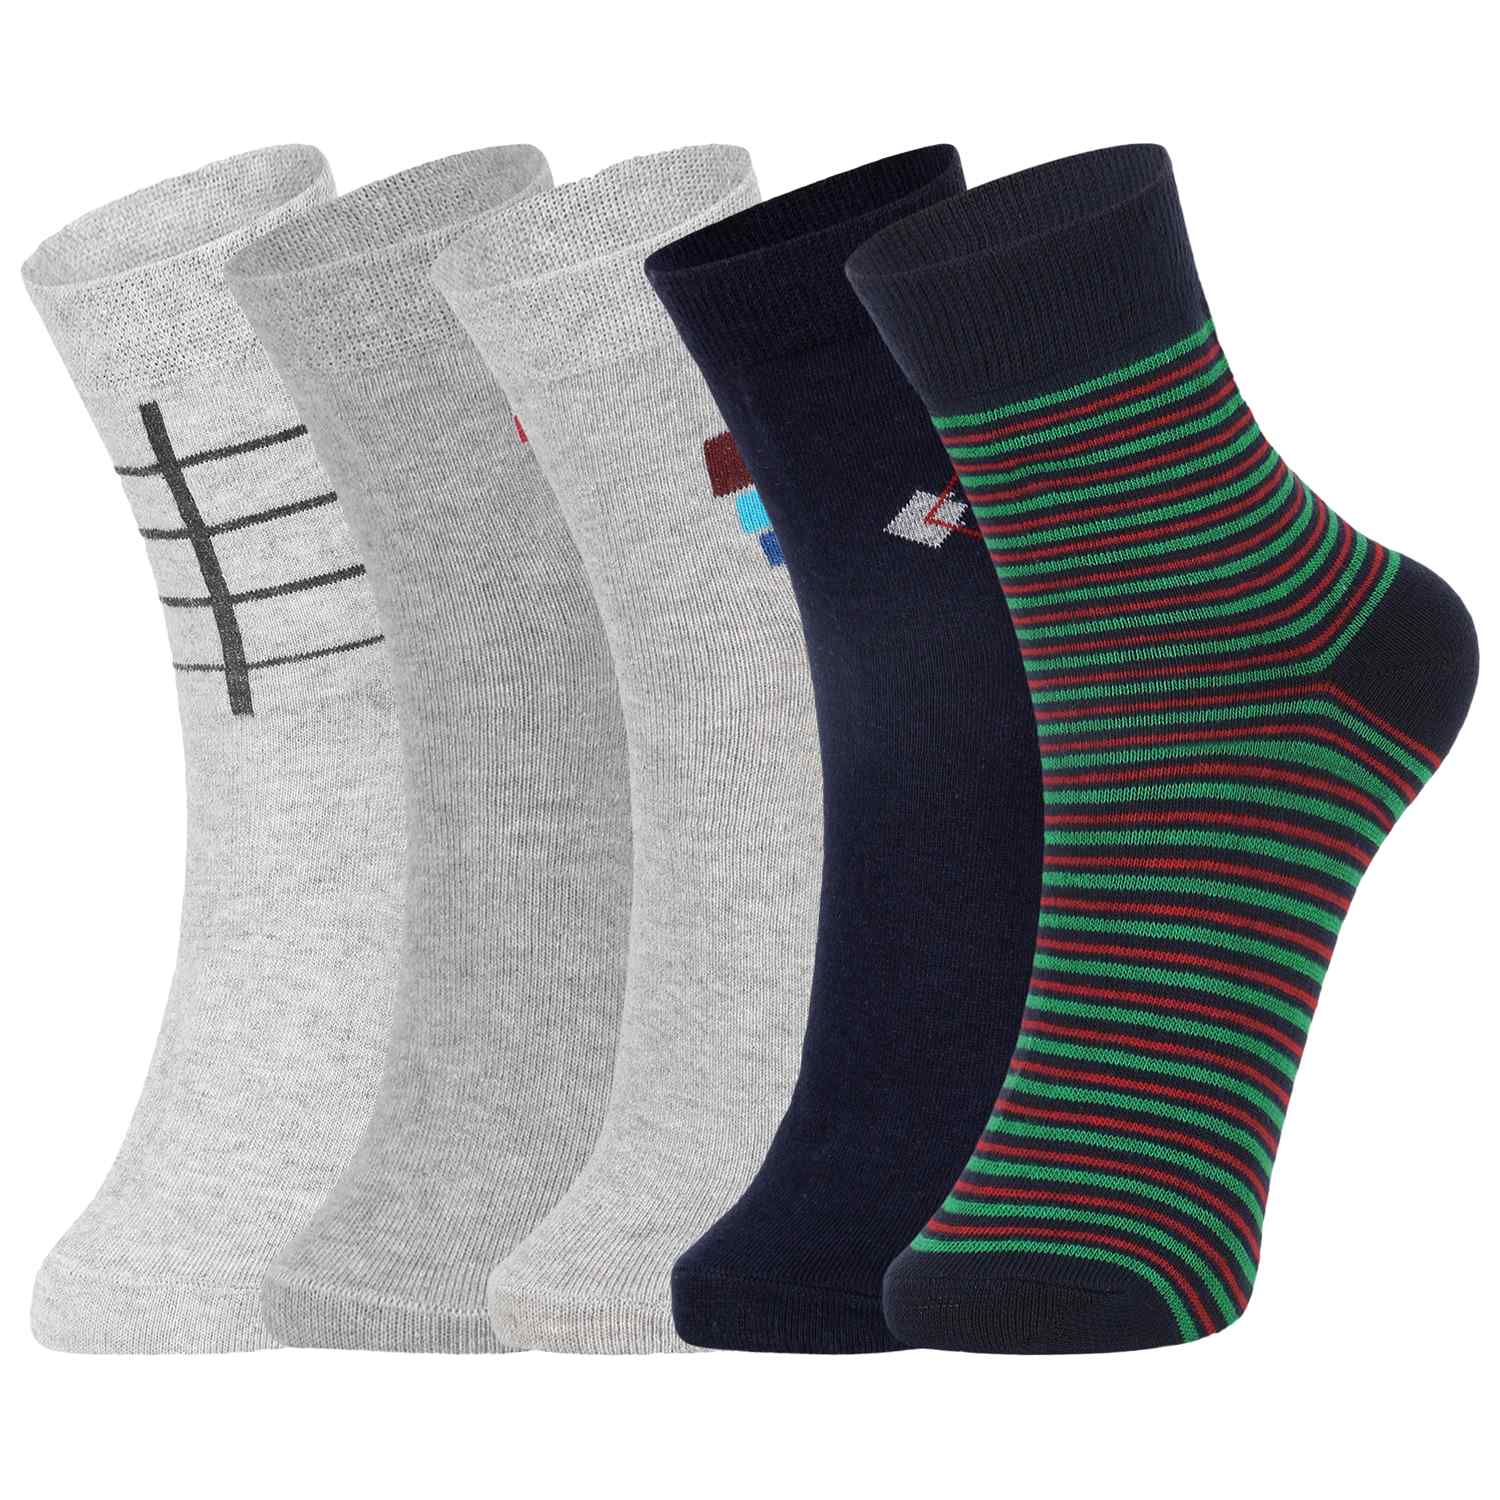 Buy DUKK Multi Pack Of 5 Ankle Socks Online @ ₹499 from ShopClues